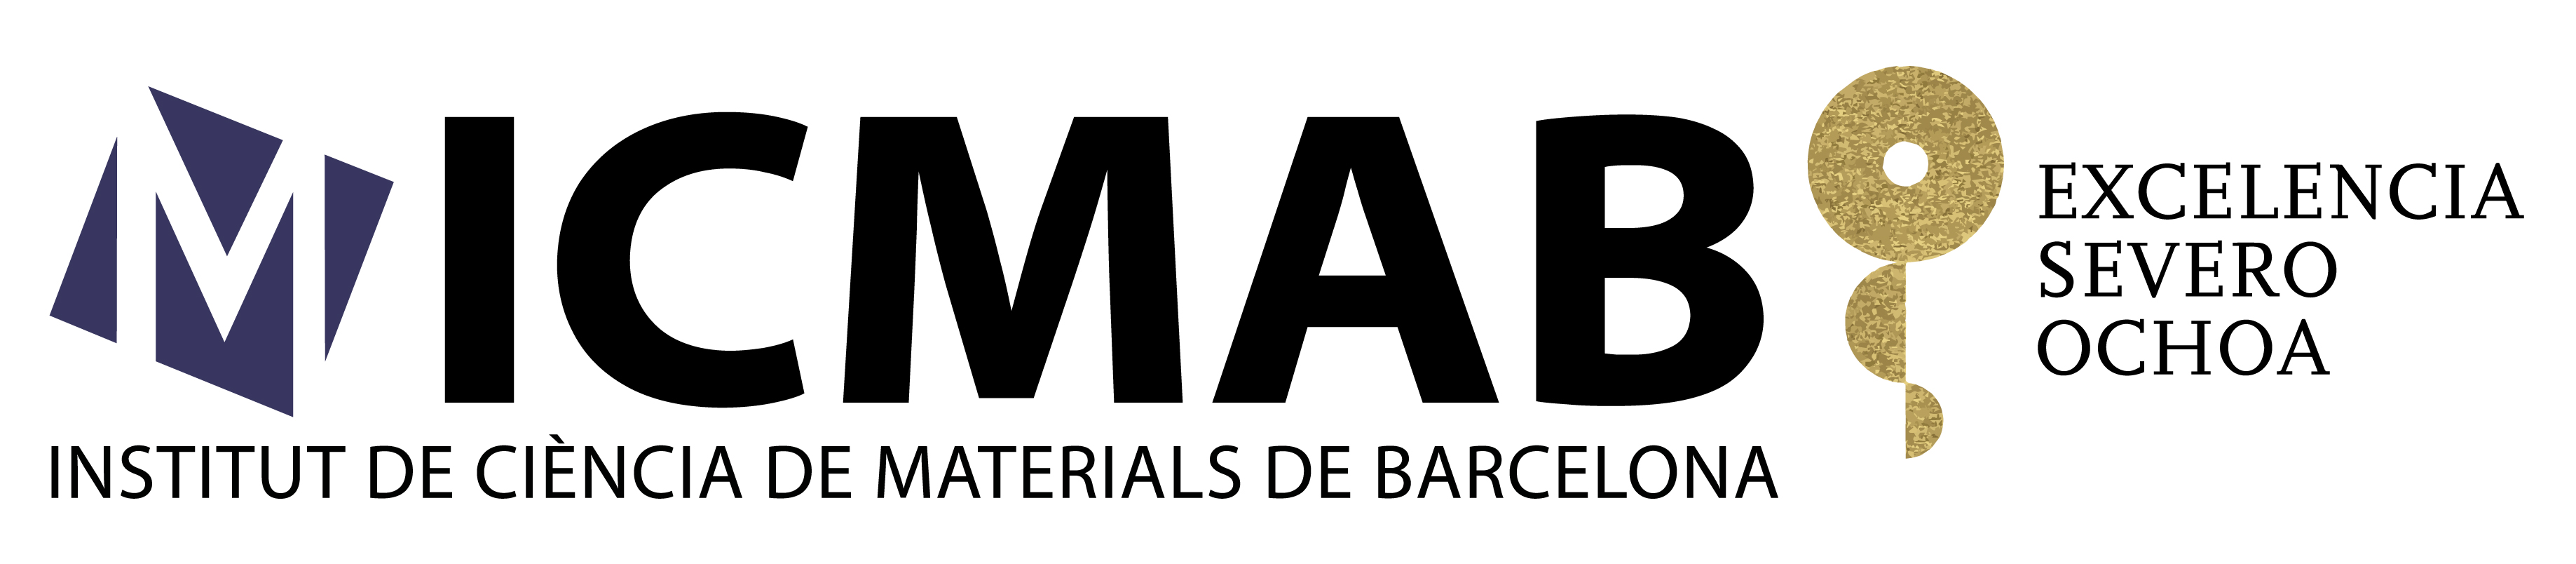 Institut de Ciència de Materials de Barcelona (ICMAB, CSIC) - Excelencia Severo Ochoa